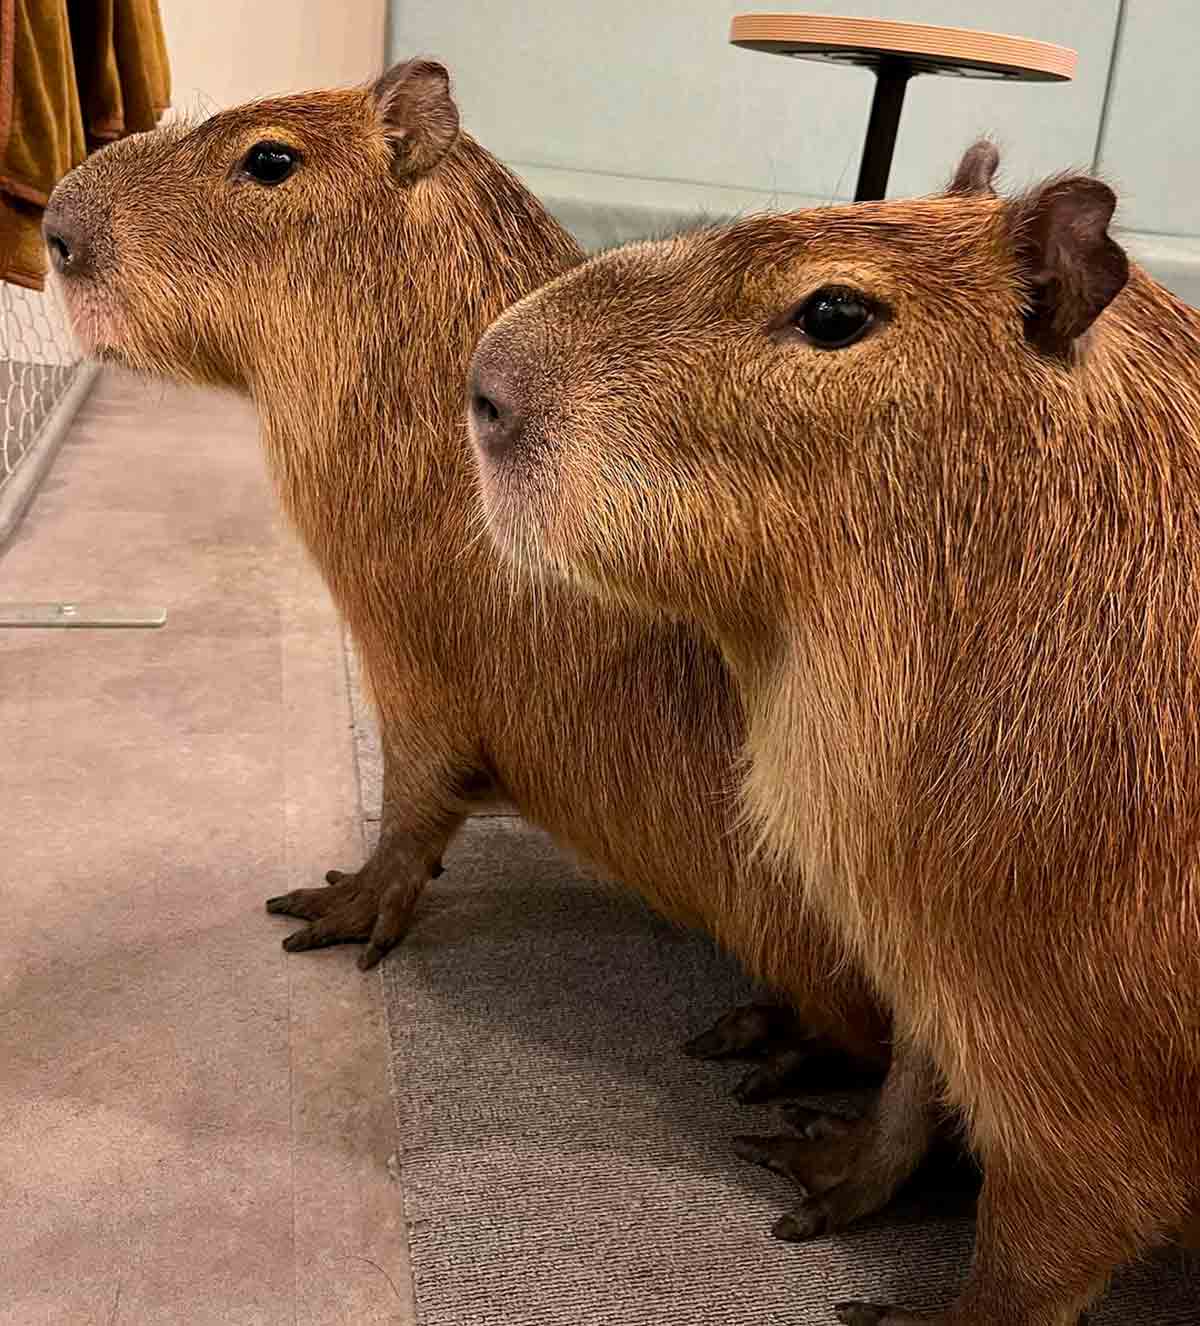 Oppdag kafeen i Japan hvor kundene kan samhandle med 2 store capybaraer. Instagram @cafe_capyba